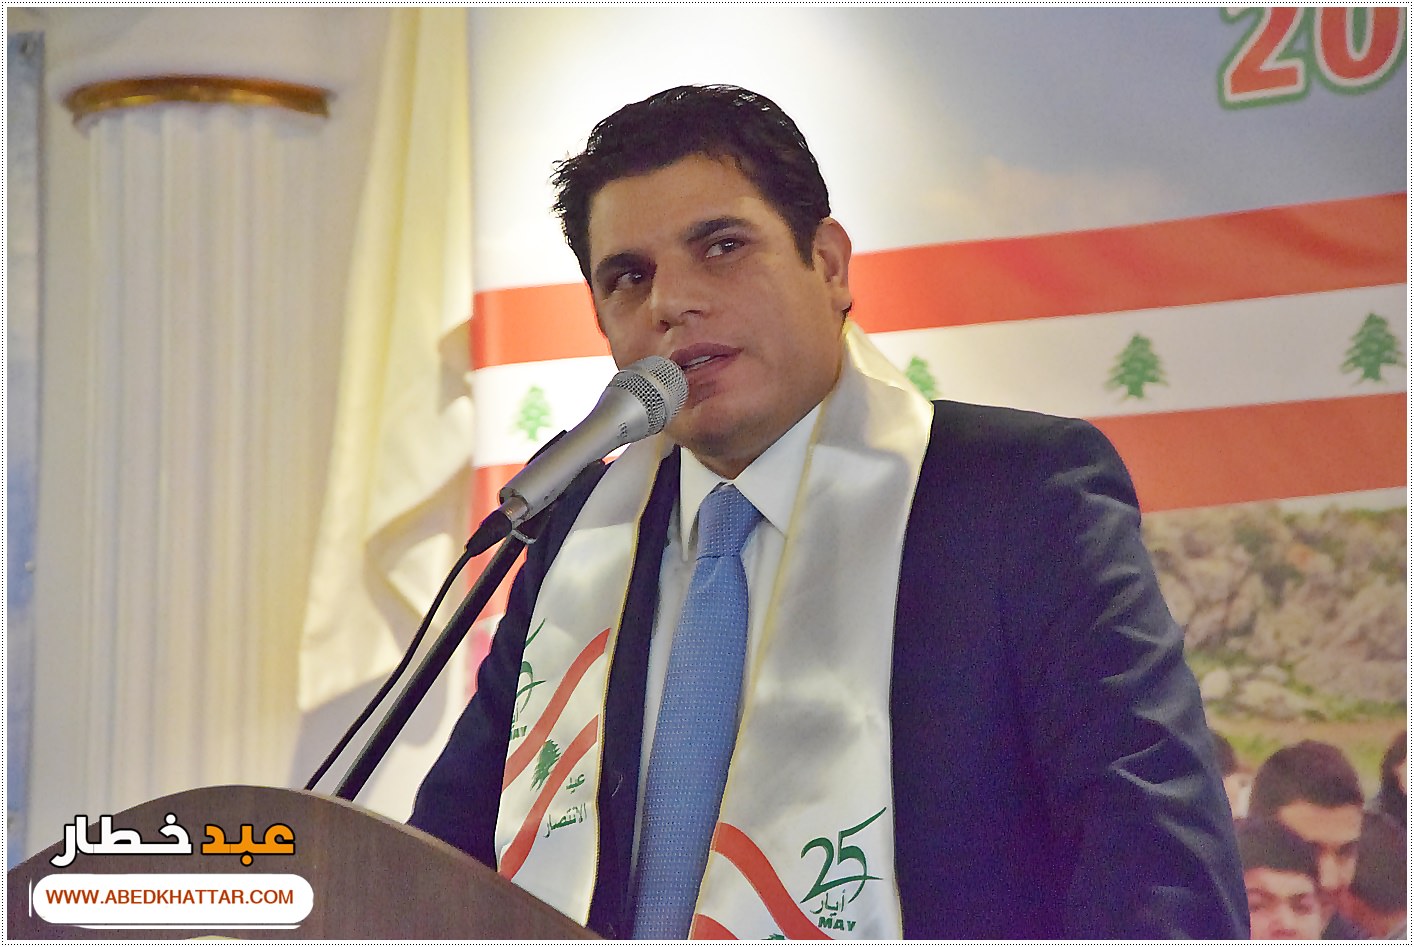 جمعية الإرشاد والجمعيات اللبنانية اقامت احتفال بمناسبة عيد النصر والتحرير